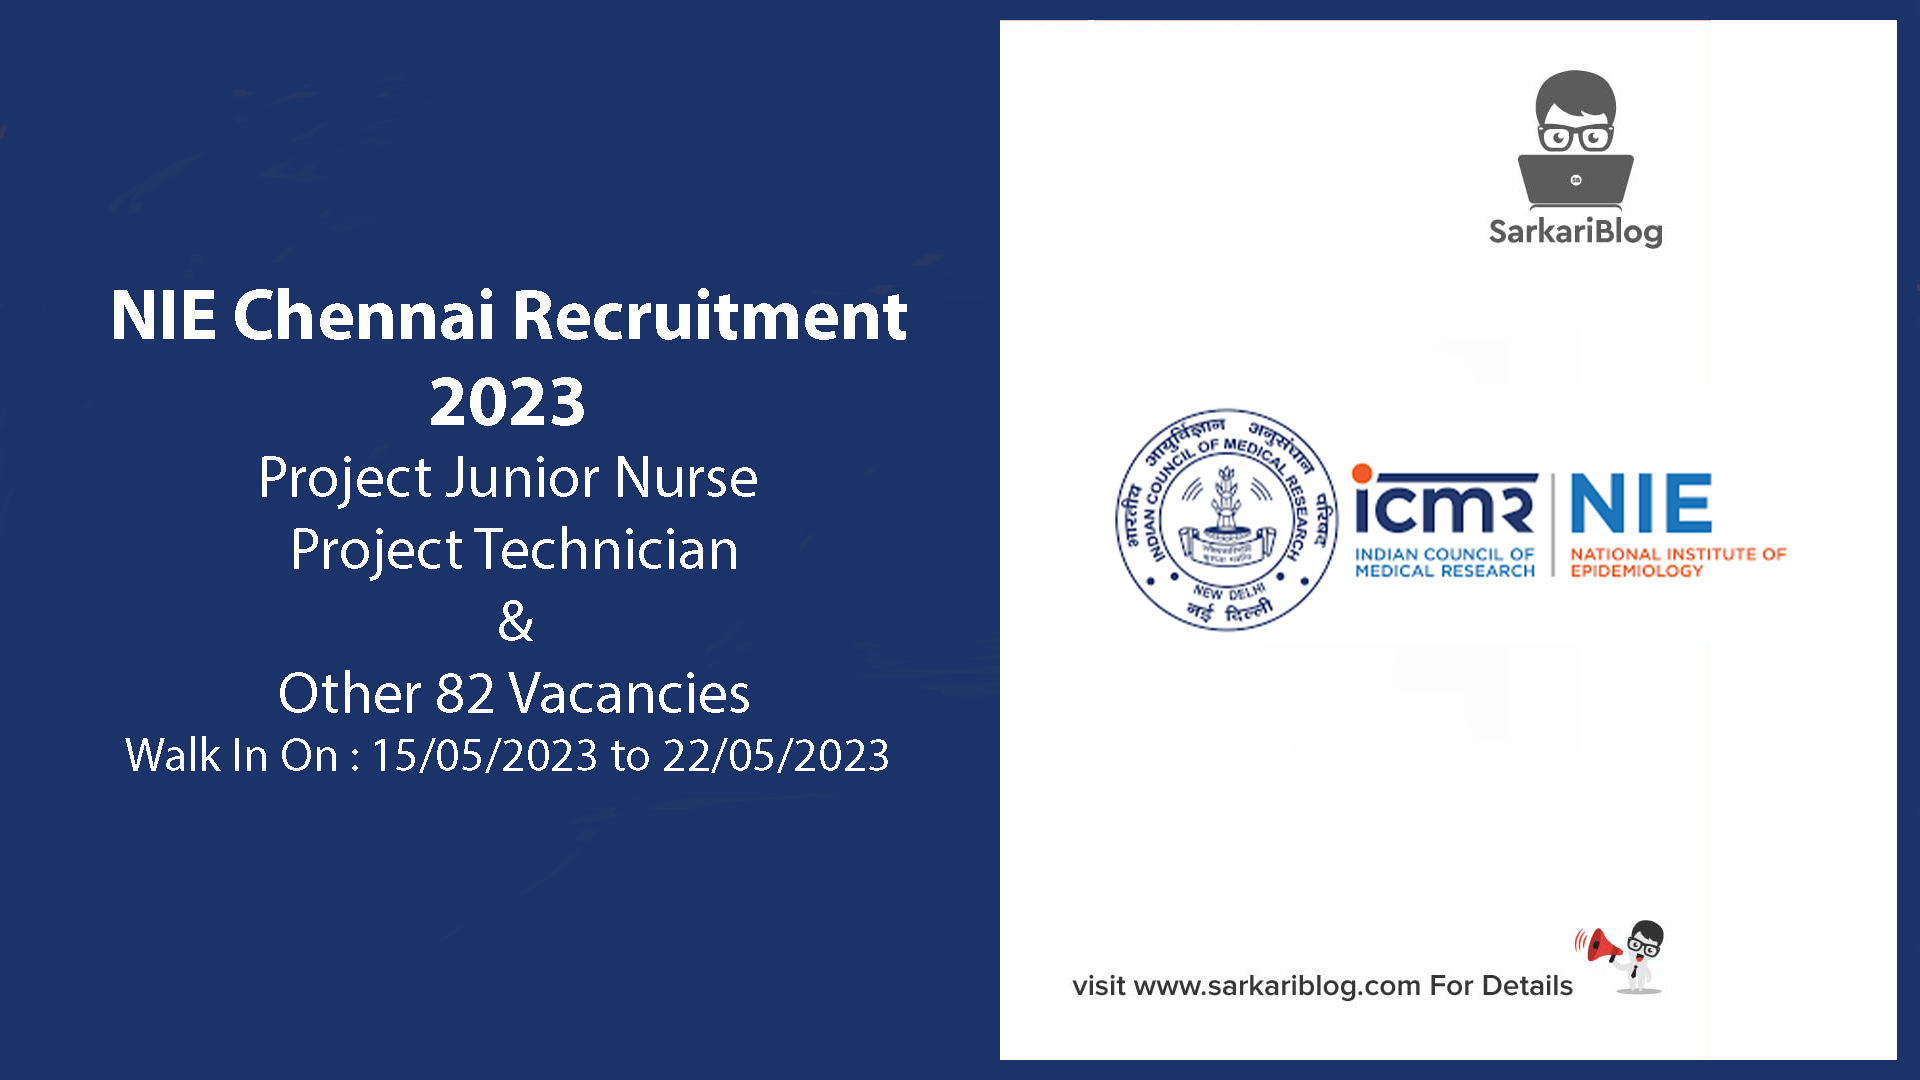 NIE Chennai Recruitment 2023